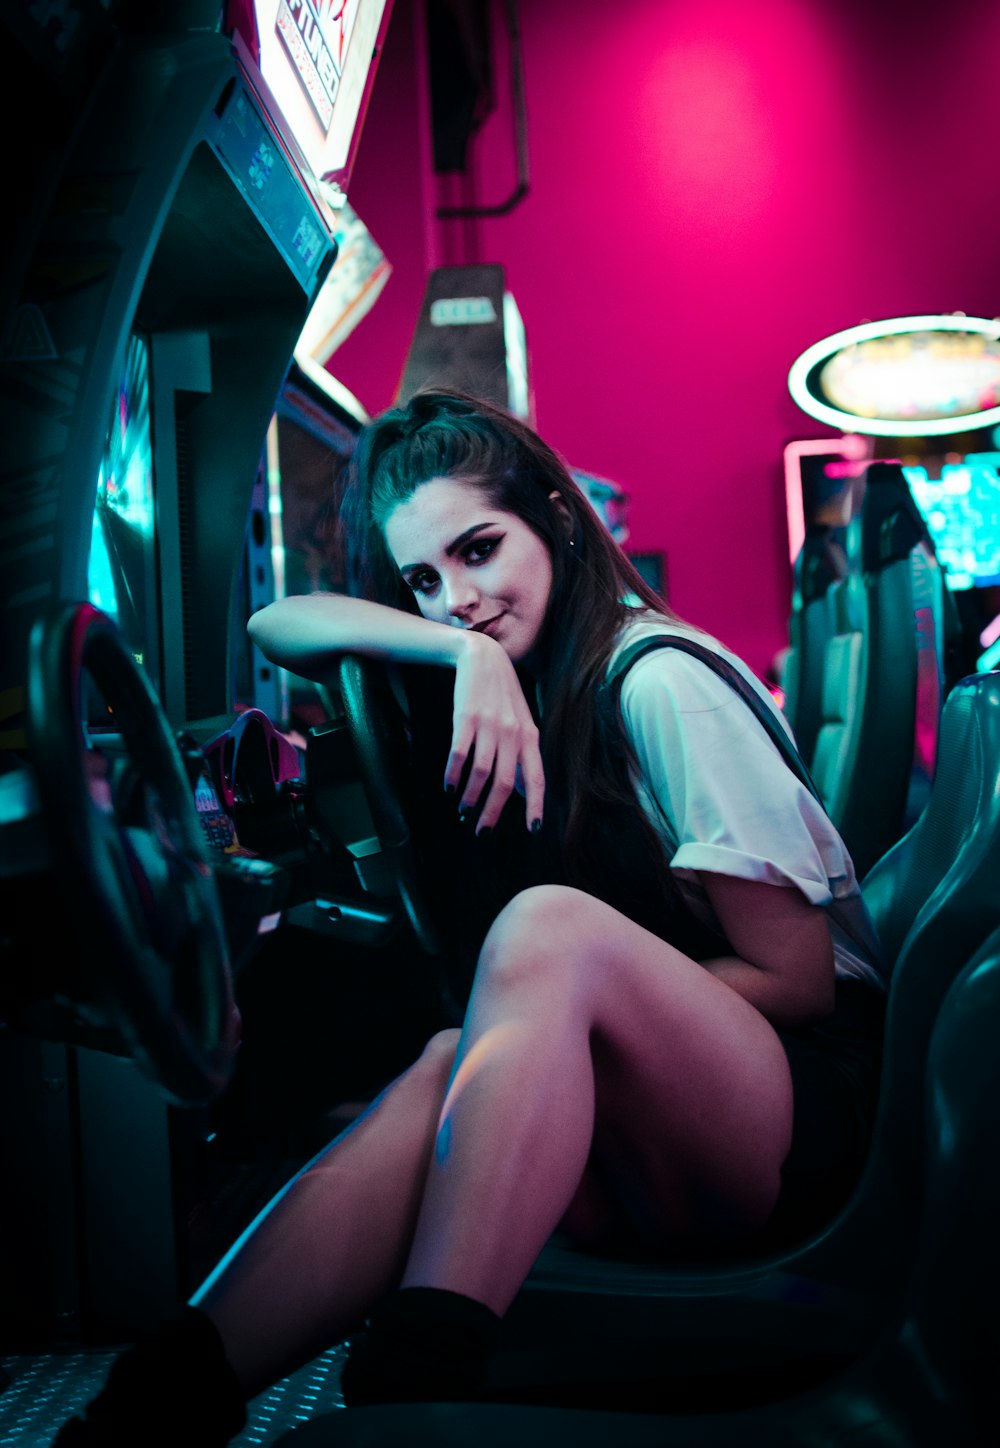 femme assise sur la machine d’arcade de voiture